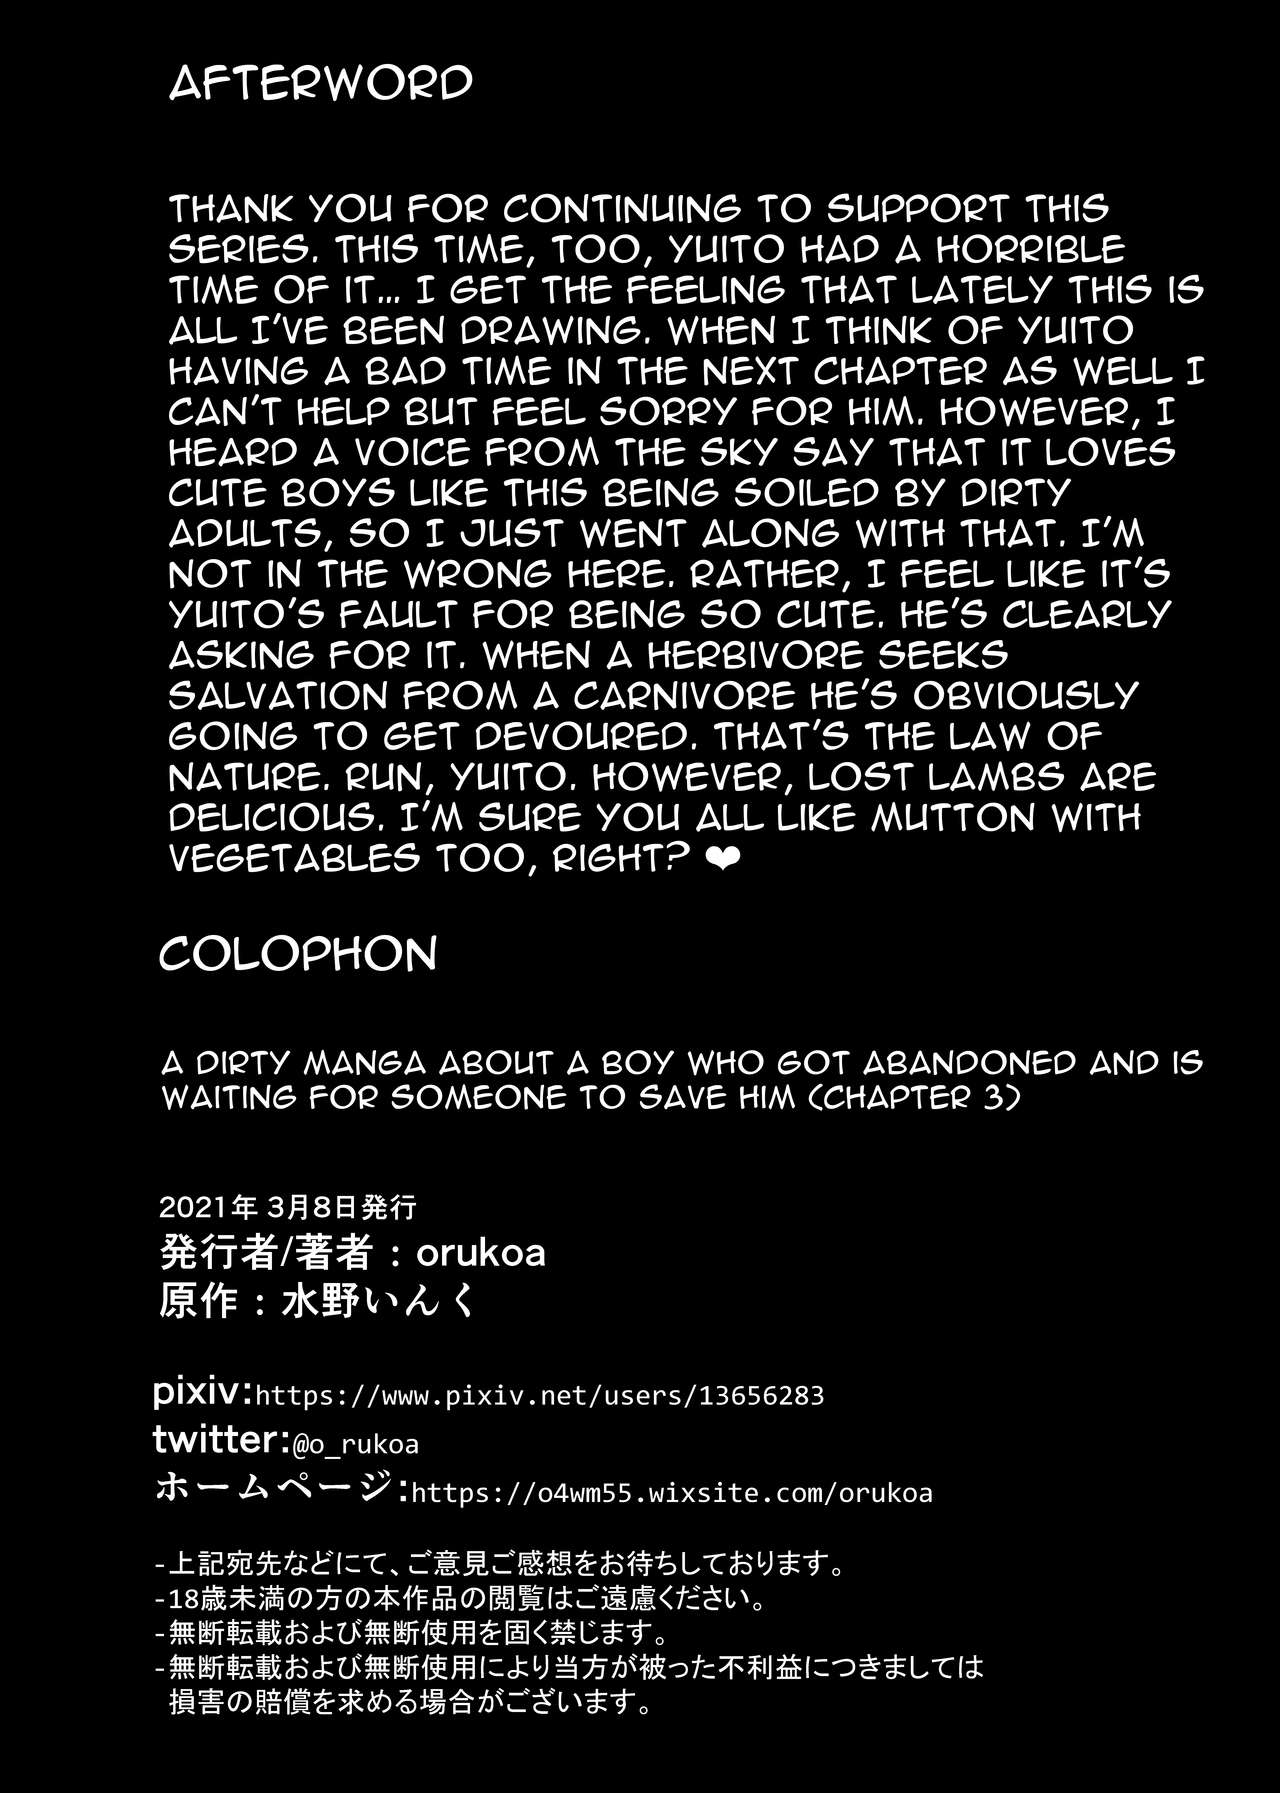 [ショタ漫画屋さん (orukoa)] 居場所がないので神待ちしてみた捨てられた少年のエロマンガ 【3話】 [DL版]